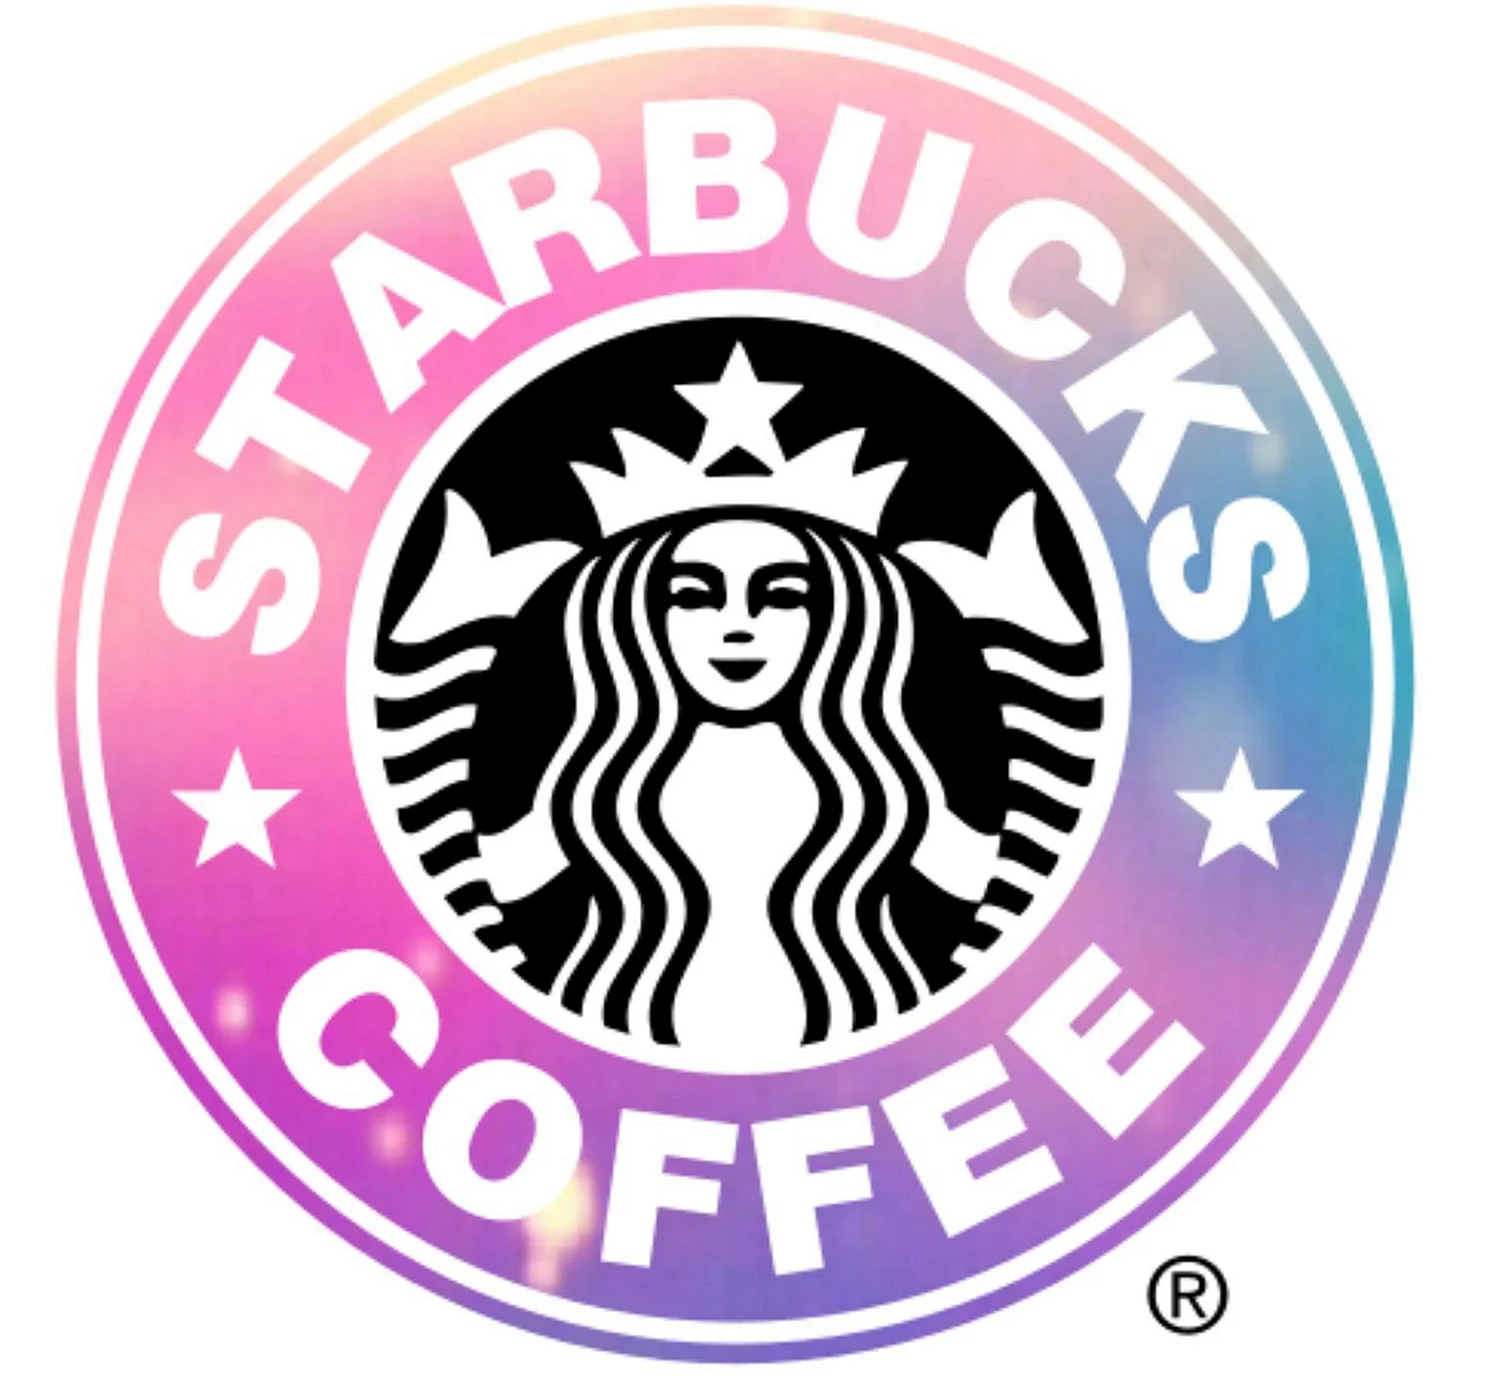 Логотип Старбакс 2020